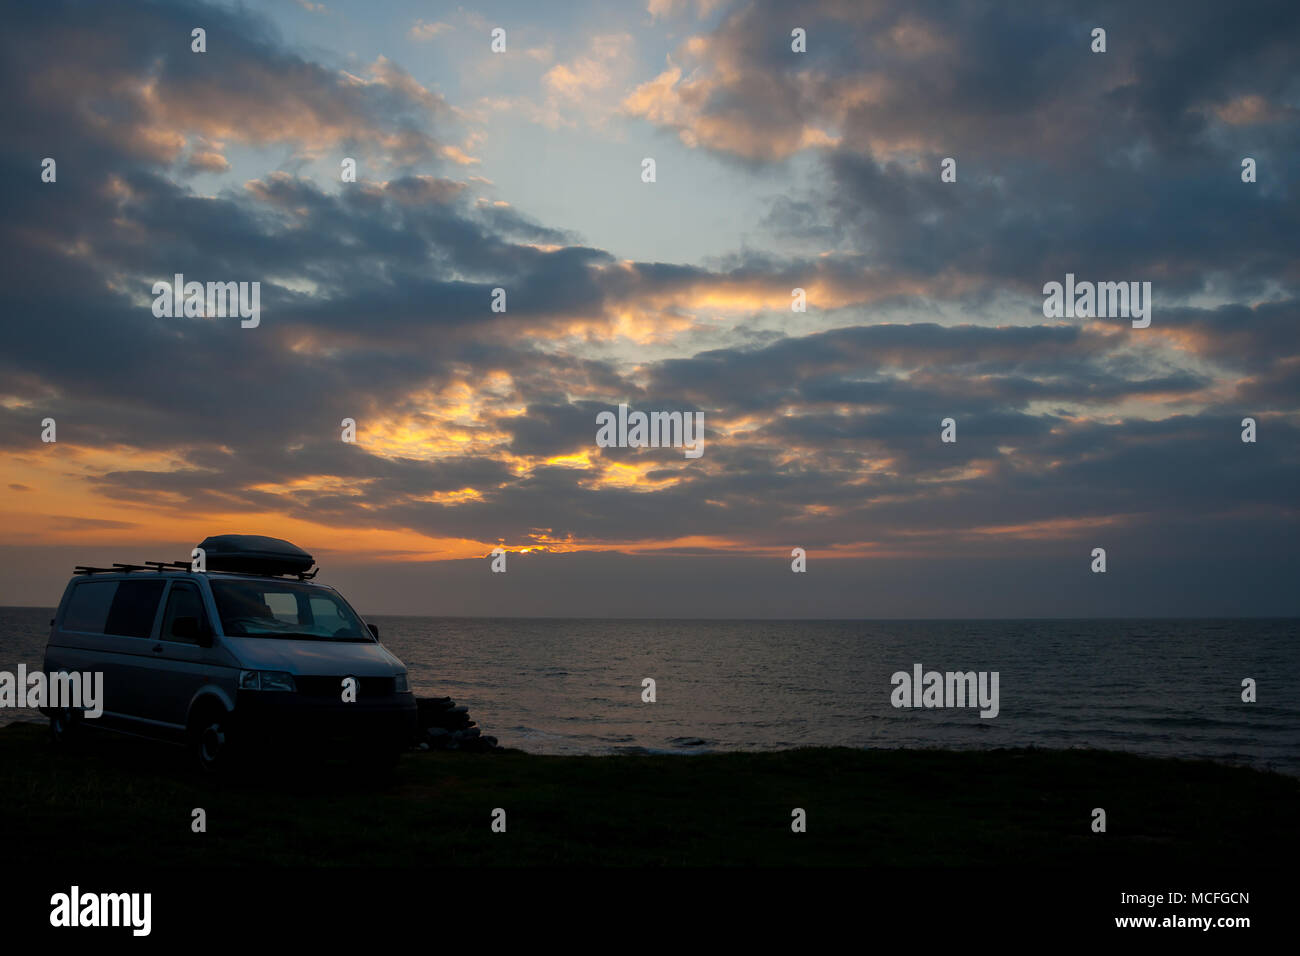 Malerischer Blick auf silbernen VW Transporter Wohnmobil auf der Seite der Klippe mit Blick auf das ruhige Meer bei Sonnenuntergang geparkt. Spektakuläre Himmelsszene. Staycation UK. Stockfoto